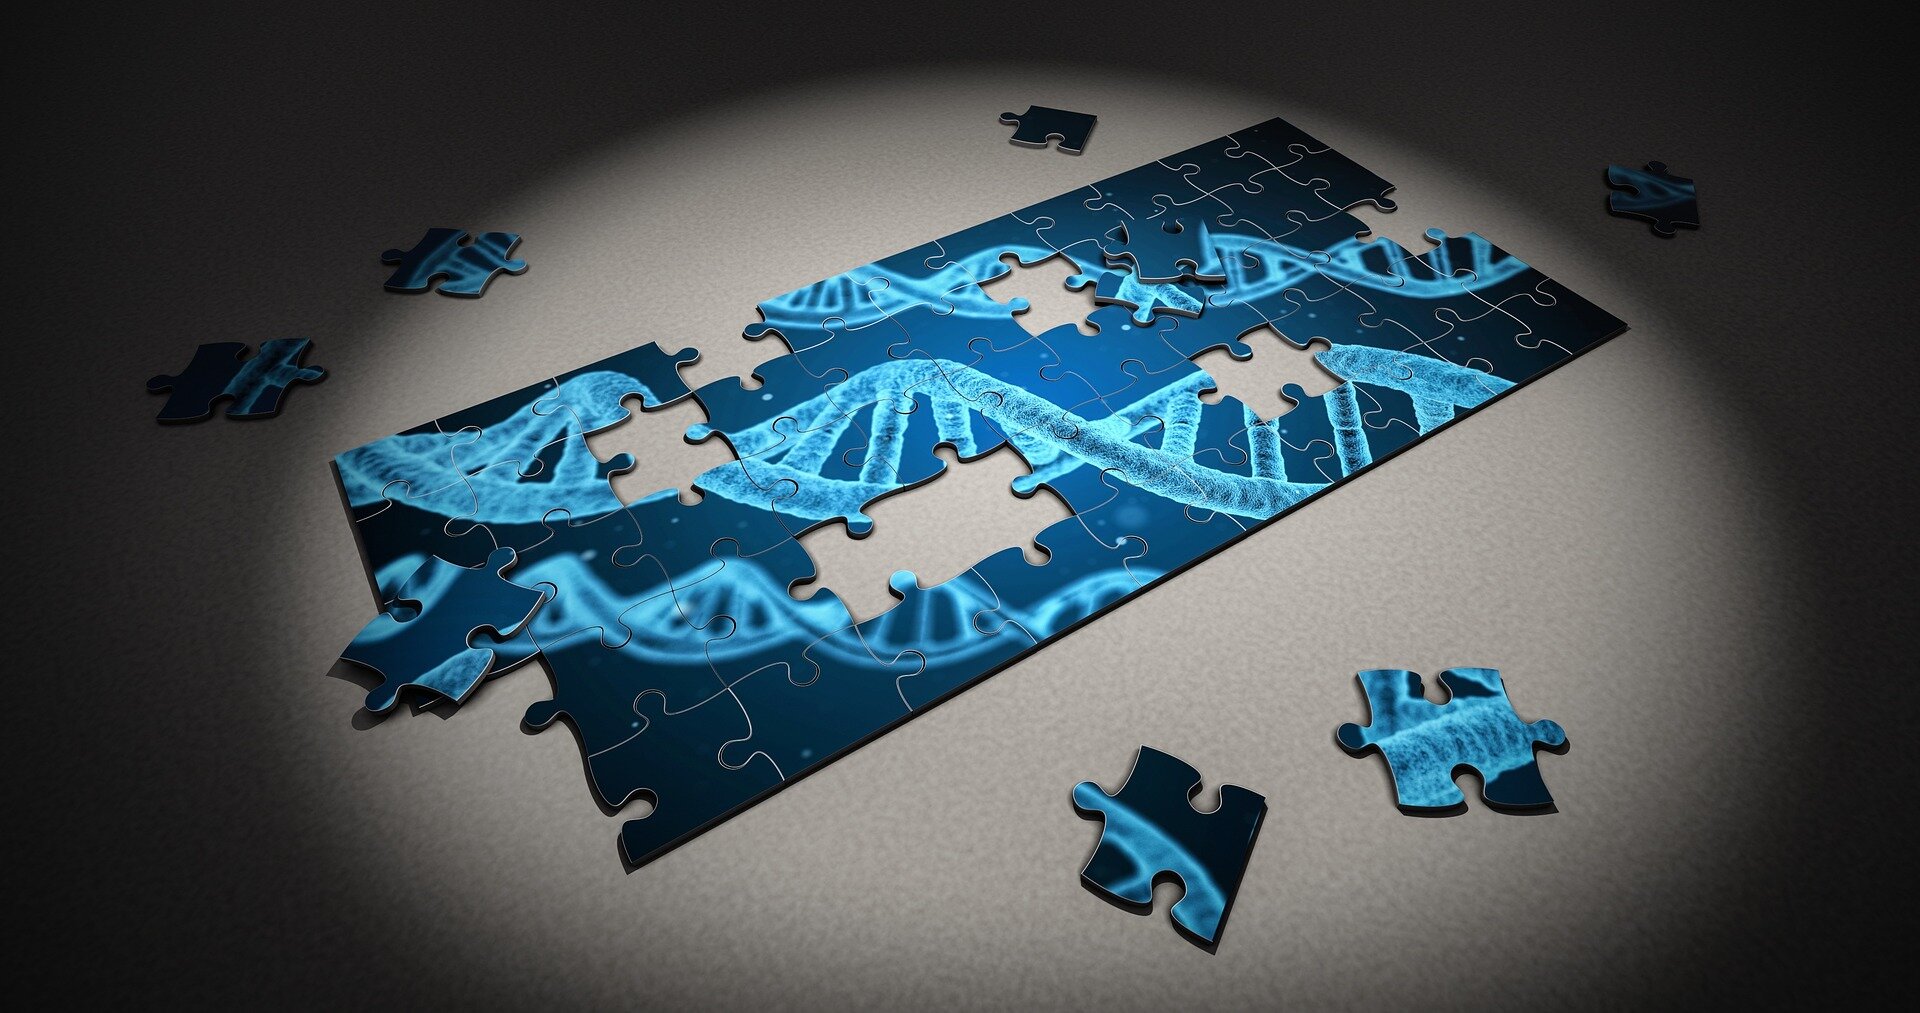 فرضية جديدة في نظرية التطور تشرح لماذا تتحرك الجينات على الكروموسومات - اكتشاف الحمض النّووي وكيفية تضاعفه - الطفرات في الحمض النووي 